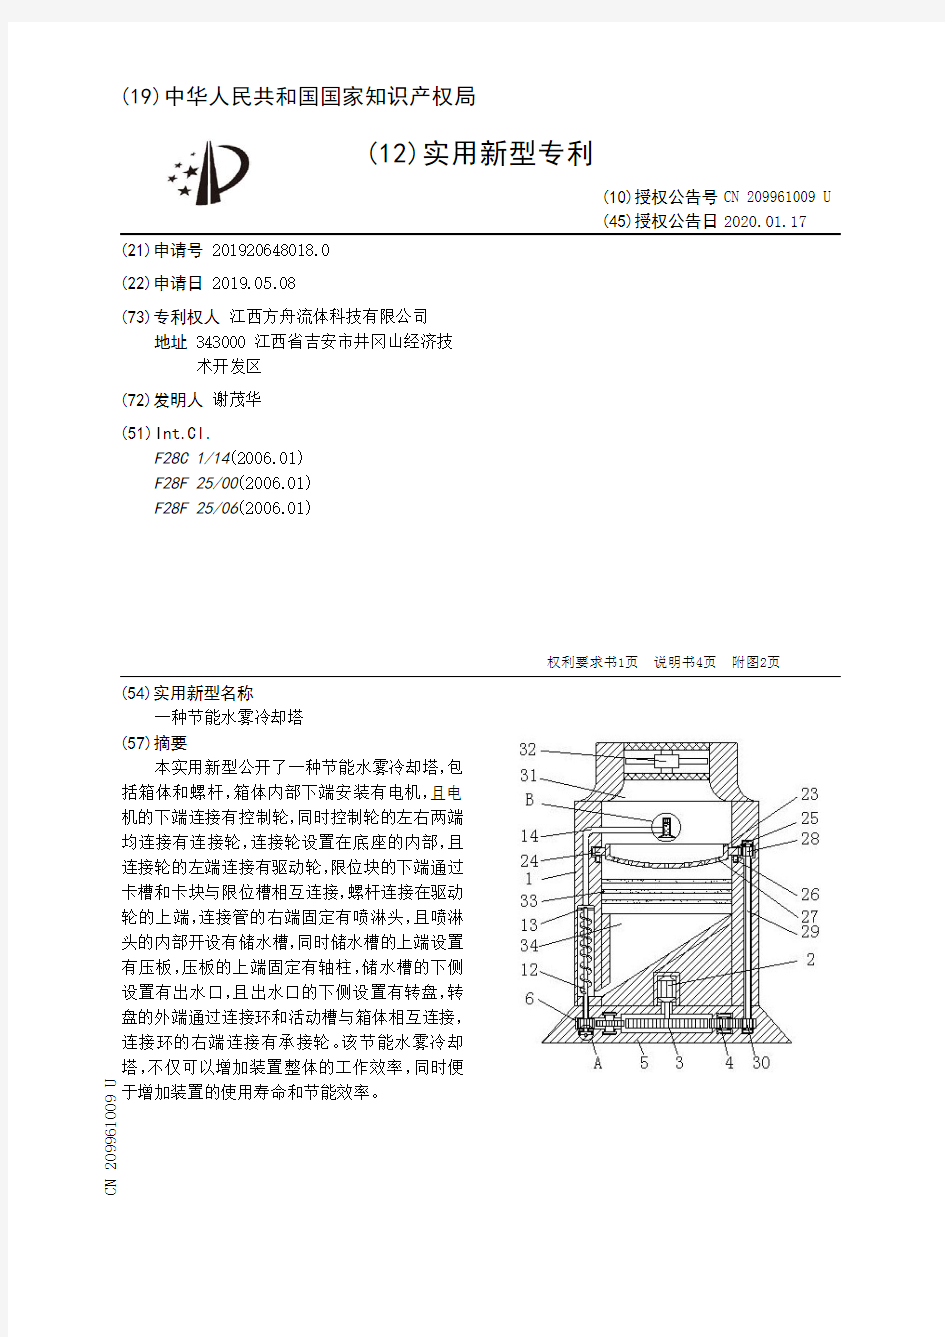 【CN209961009U】一种节能水雾冷却塔【专利】